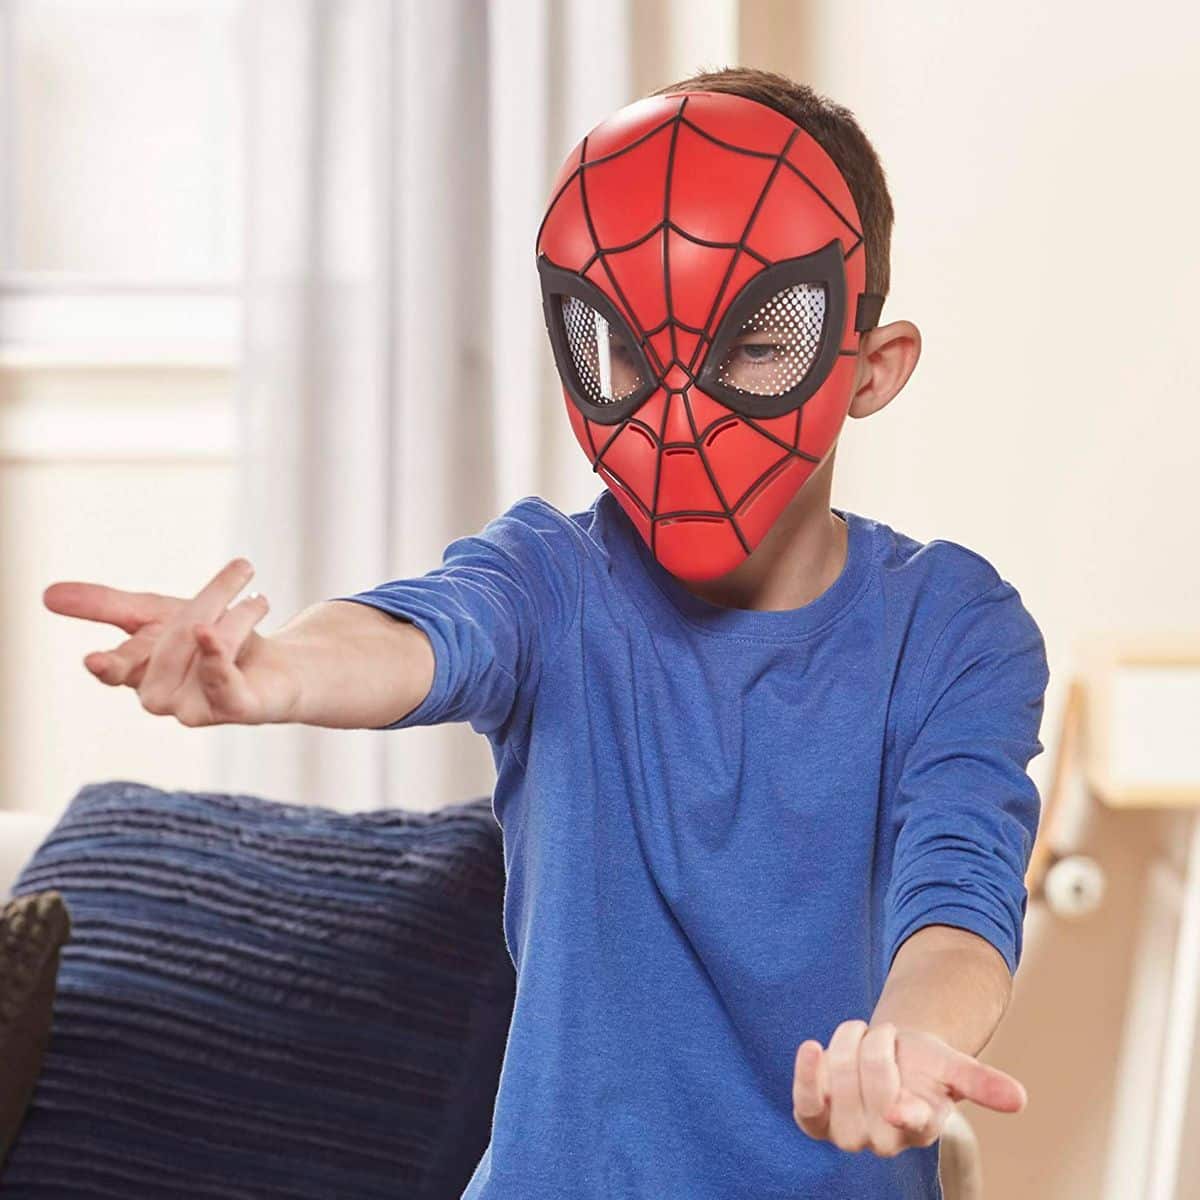 Muñeco Spiderman Peluche 40 Cm Original Marvel® Phiphi